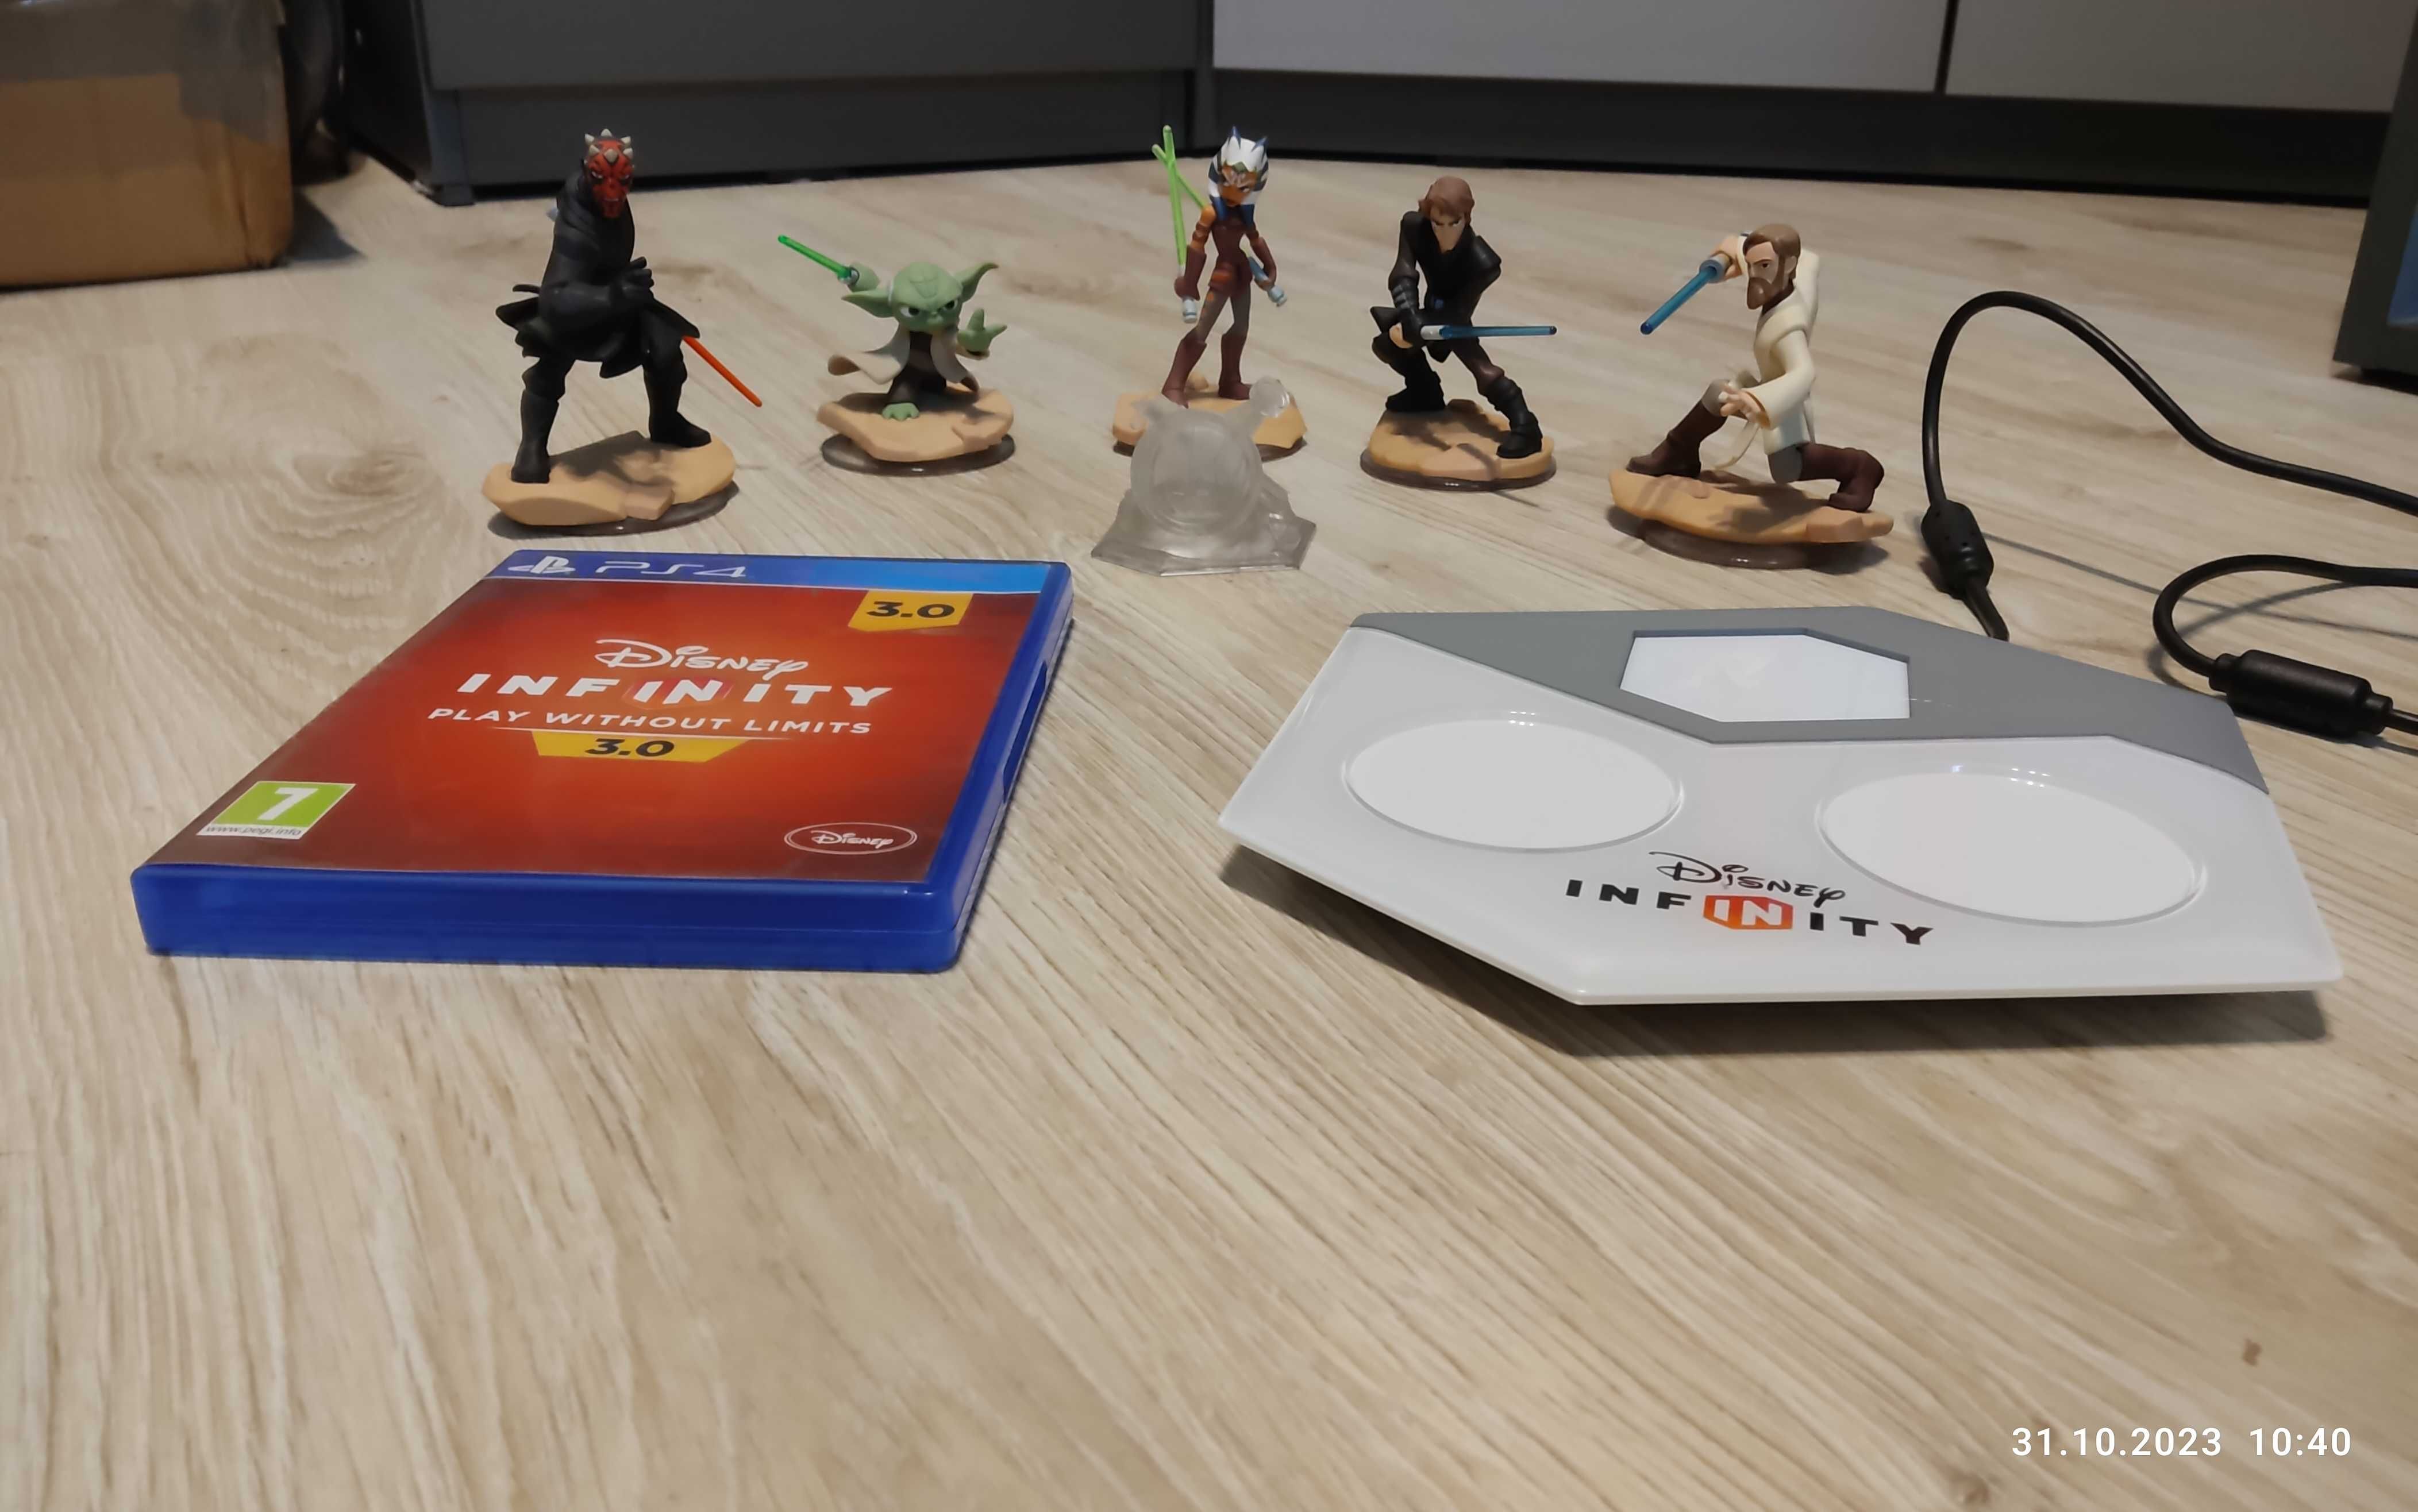 Disney Infinity 3.0 Star Wars zestaw startowy plus dodatki PS 4